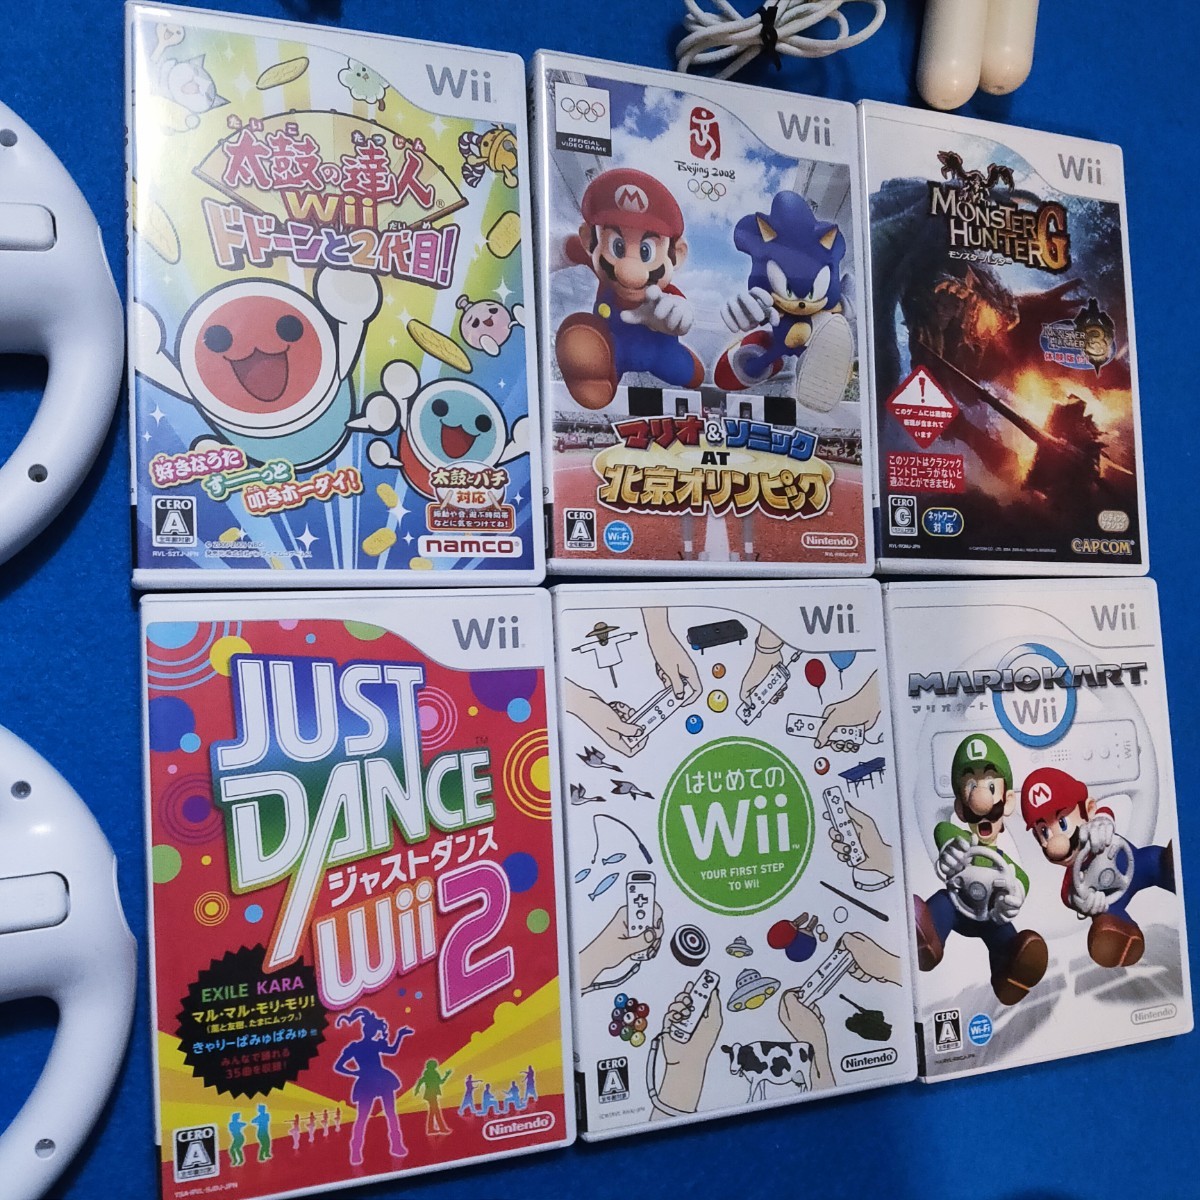 任天堂 Wii 太鼓の達人 マリオカート ジャストダンス2 モンハンG  タタコン スーパーマリオブラザーズ ソフト 任天堂Wii